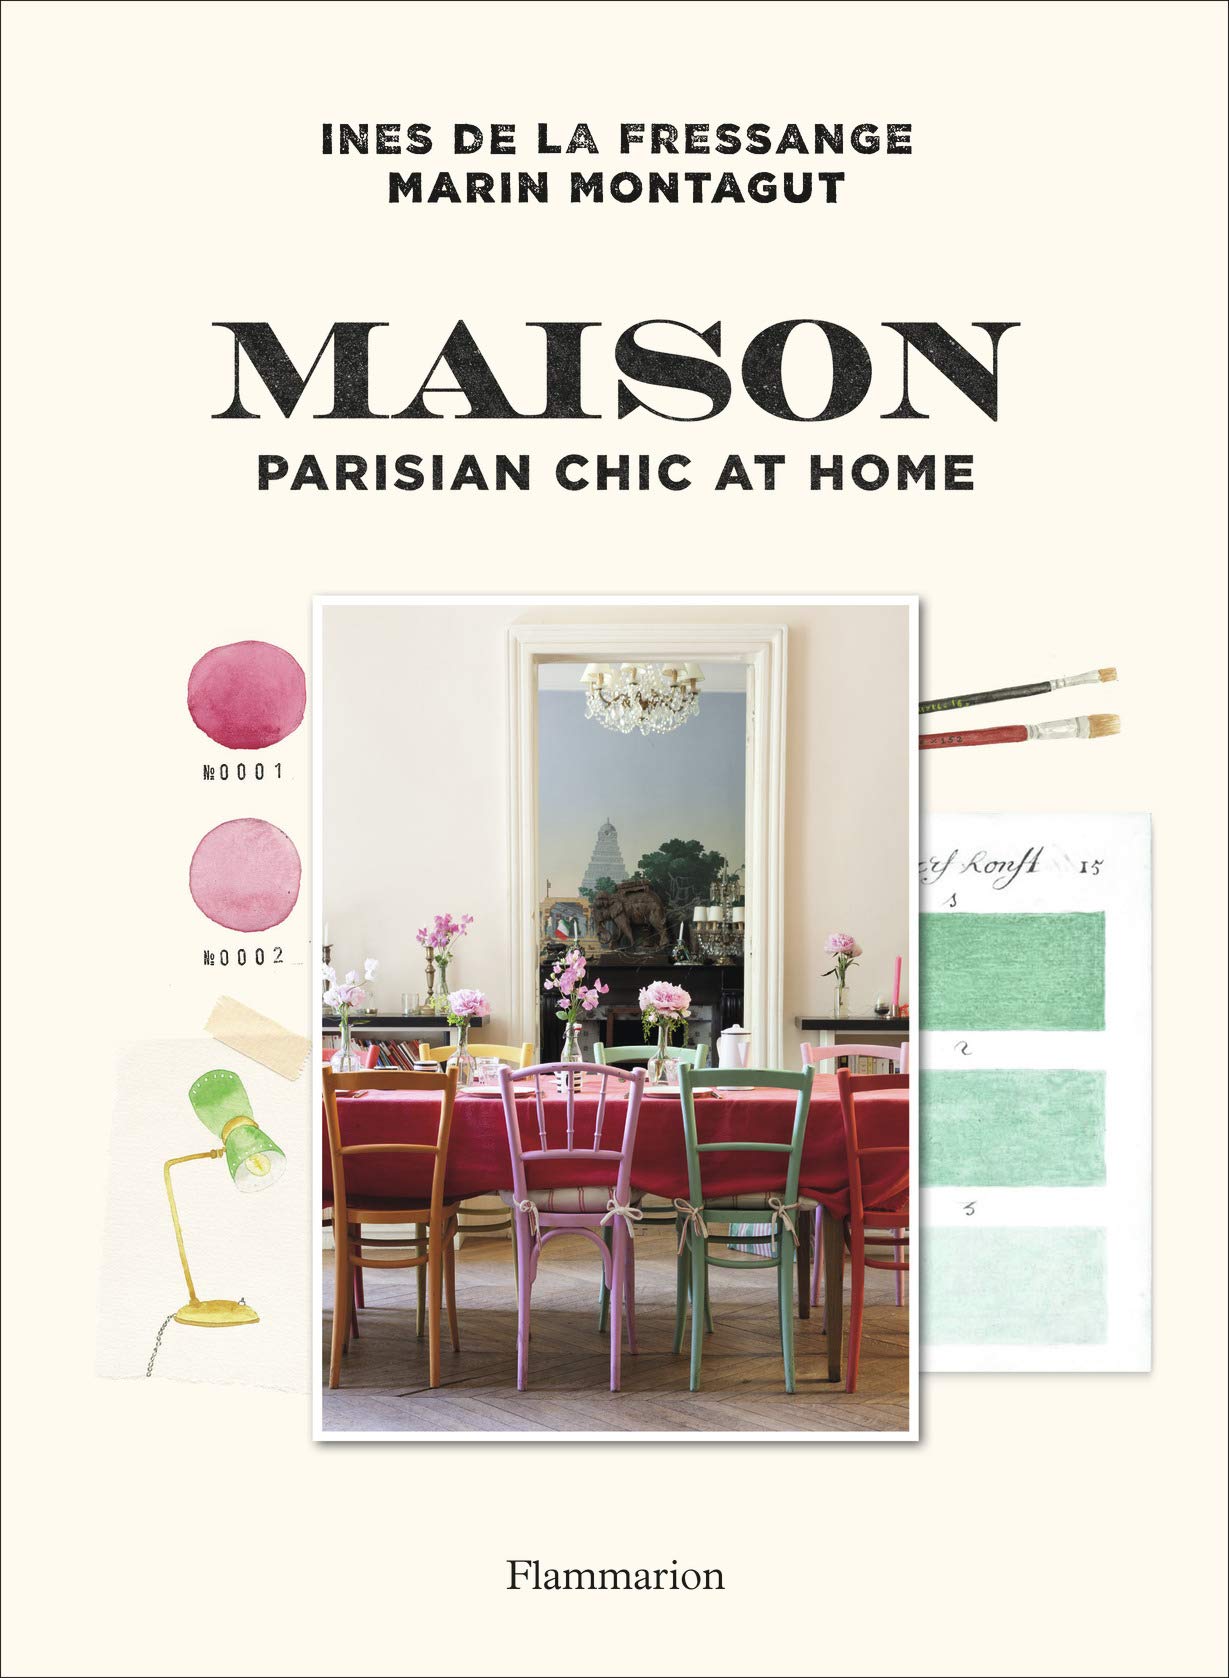 Maison: Parisian Chic at Home | Ines de la Fressange, Marin Montagut